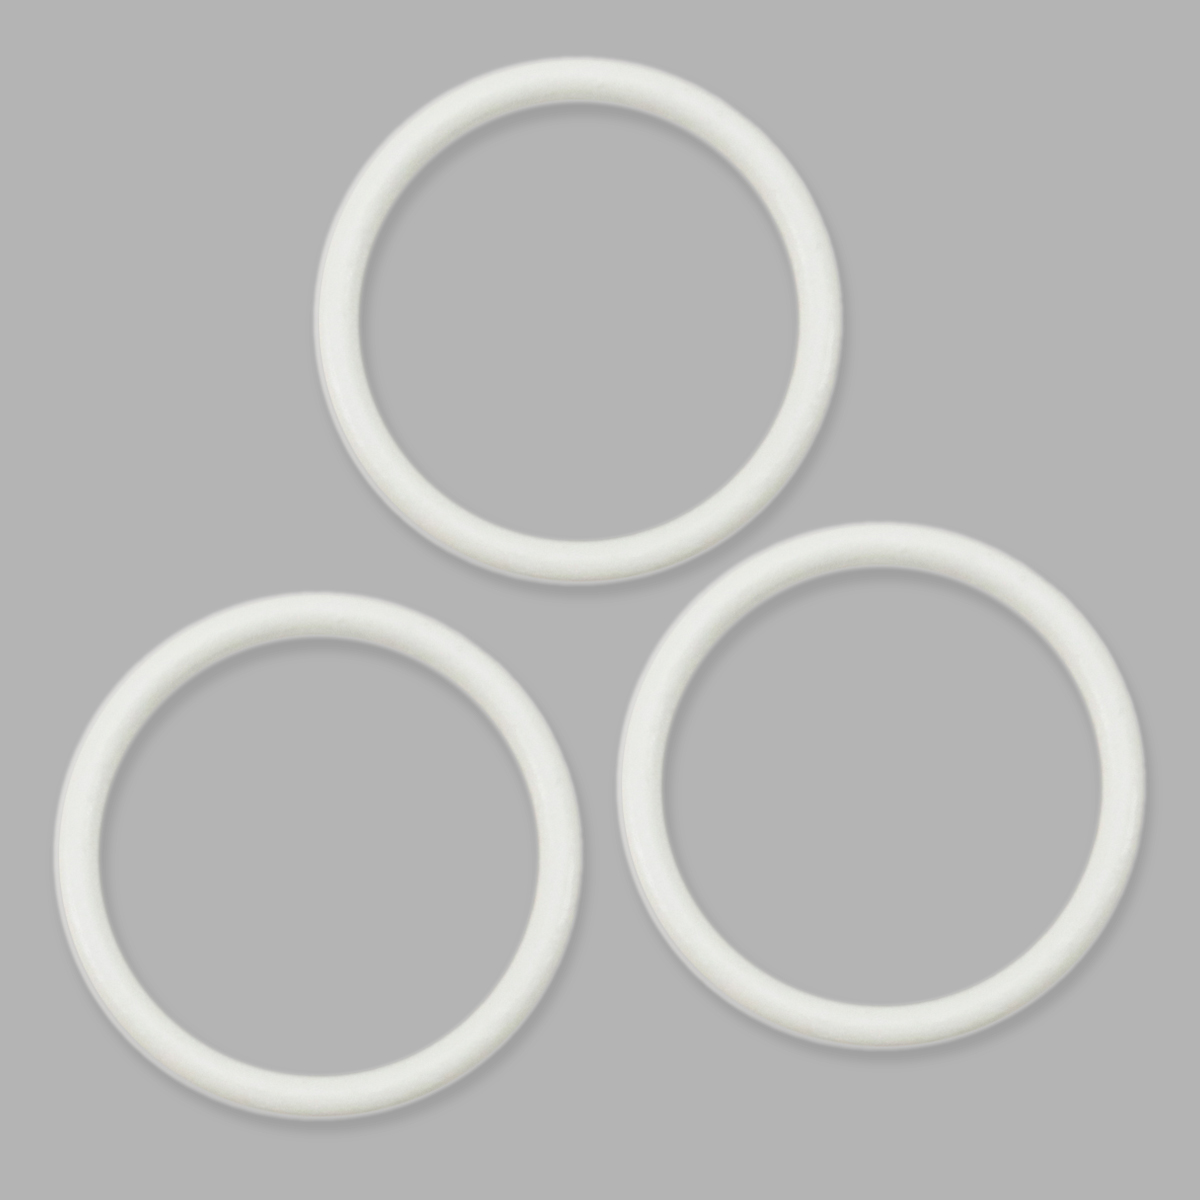 Кольцо для бюстгальтера Arta-F, 2976, 18 мм, металл (004 приглушенный белый), 50 шт